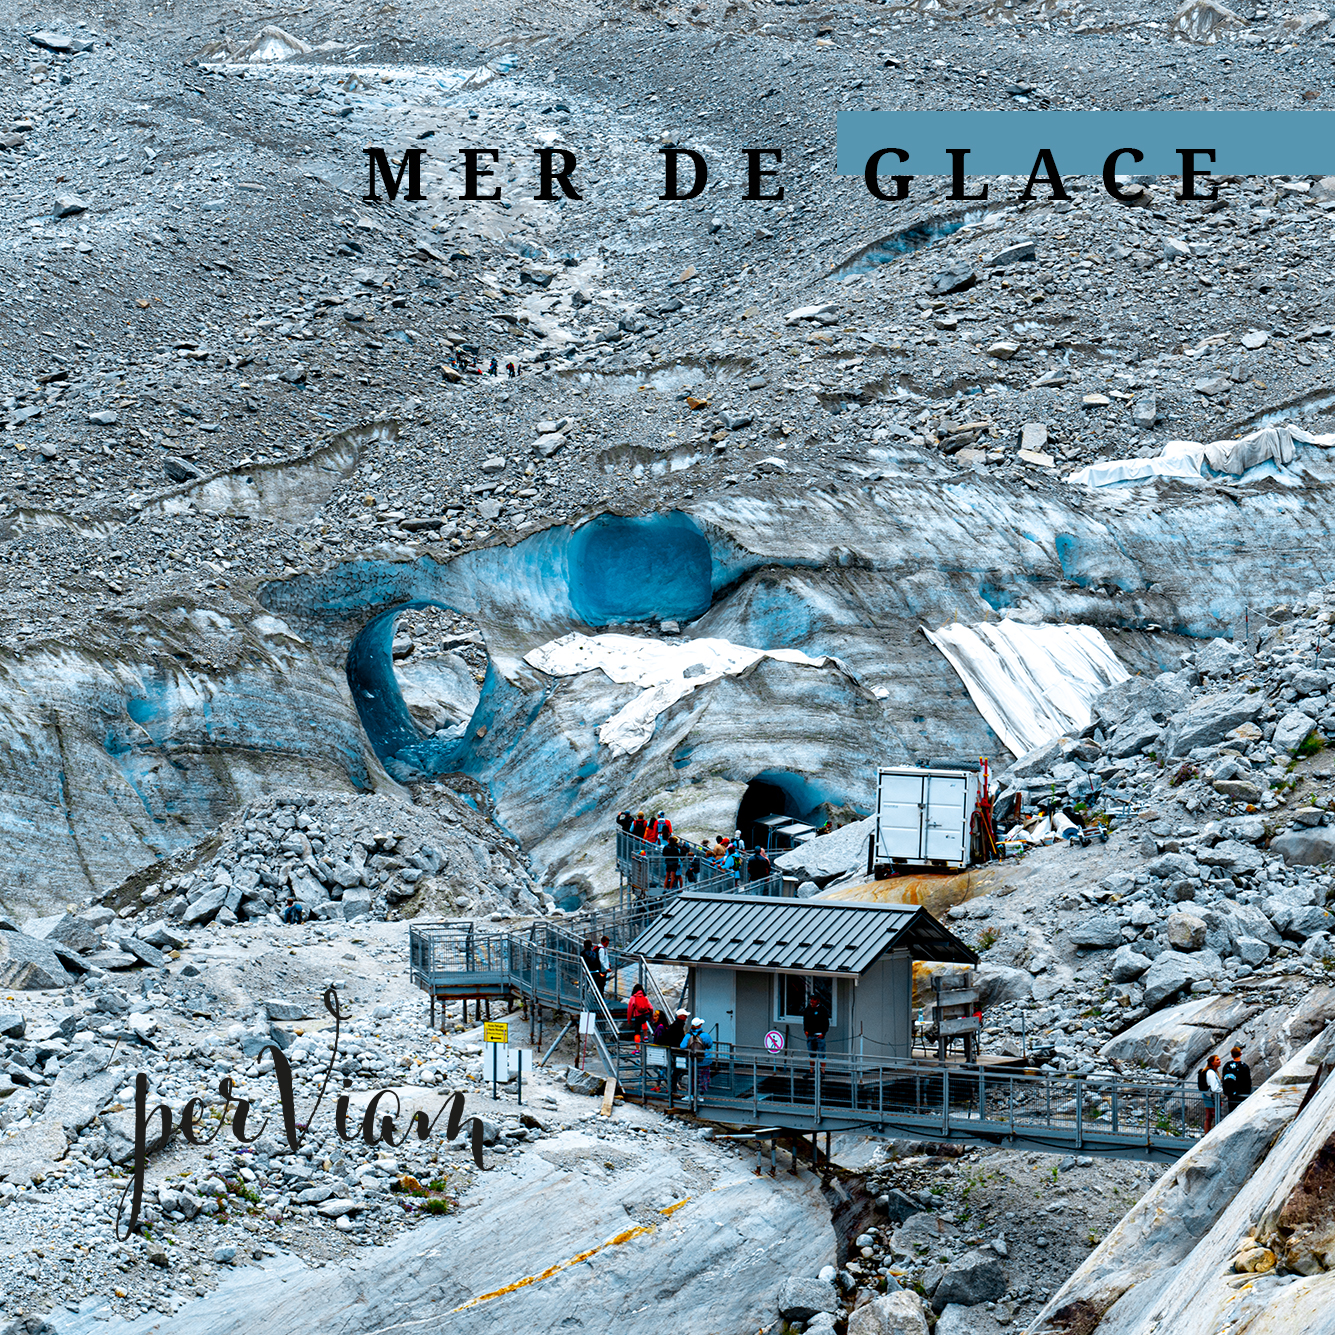 Foto eines Gletschers, der nur durch ein ausgewaschenes großes Eisloch zu erkennen ist, weil Geröll ihn bedeckt. Im Vordergrund ist eine Haus zu sehen, welches als Forschungsstation genutzt wird.